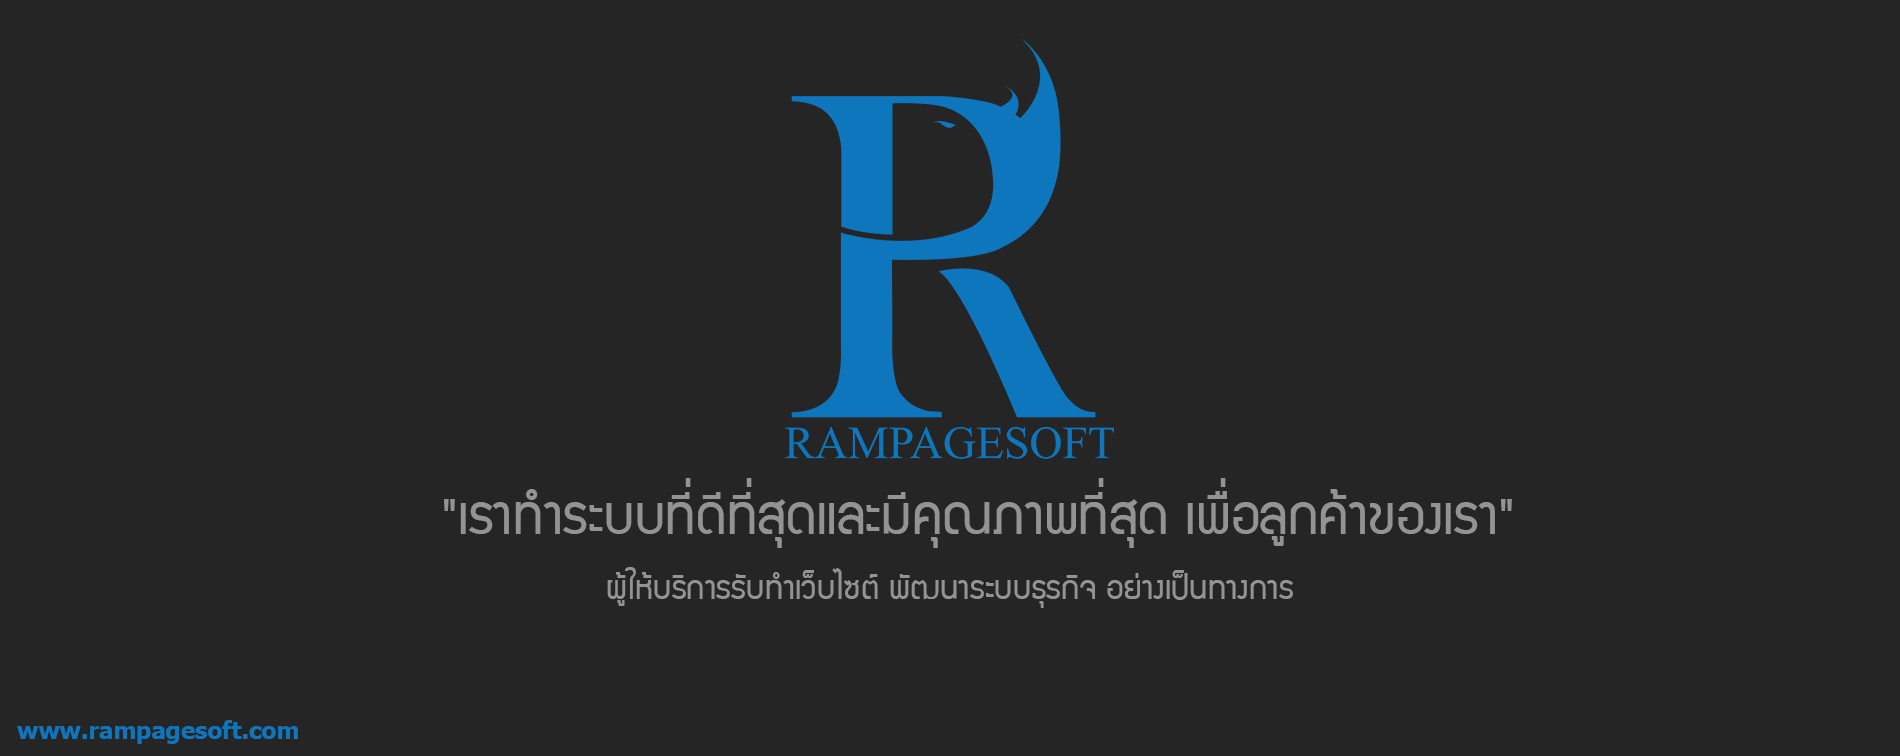 รับทำเว็บไซต์ ออกแบบเว็บไซต์ rampagesoft